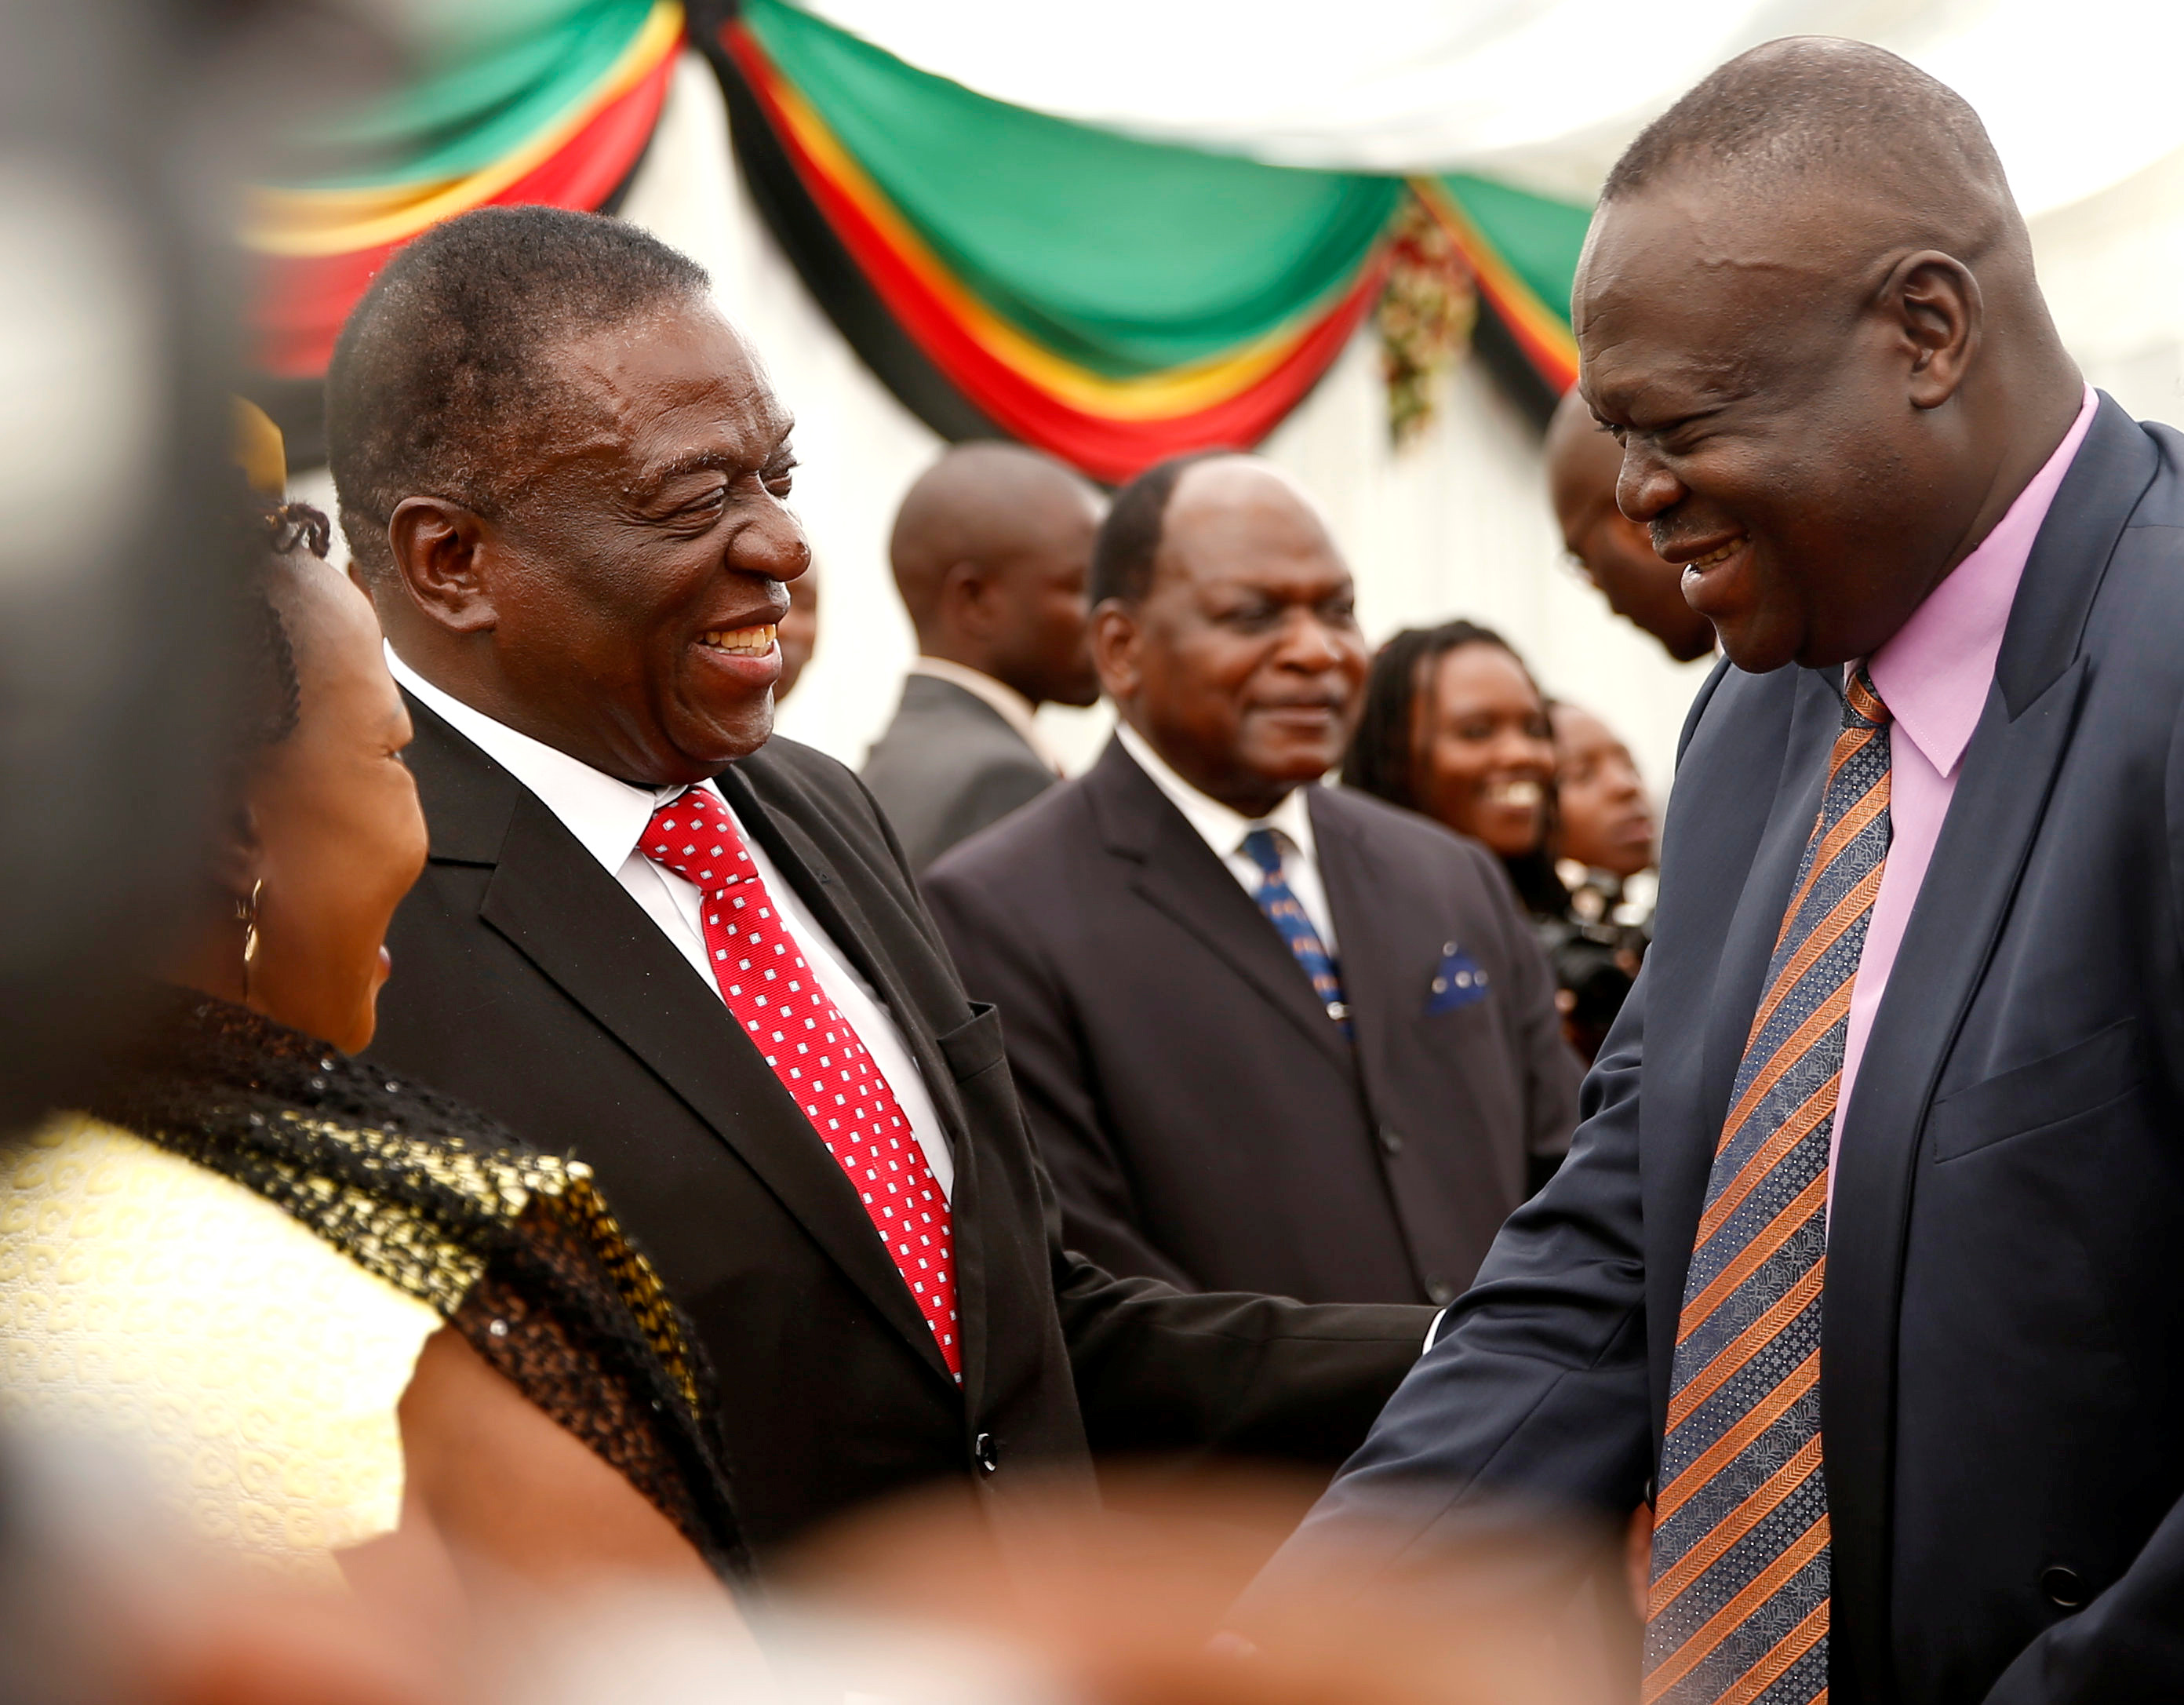 رئيس زيمبابوى يصافح أحد الوزراء